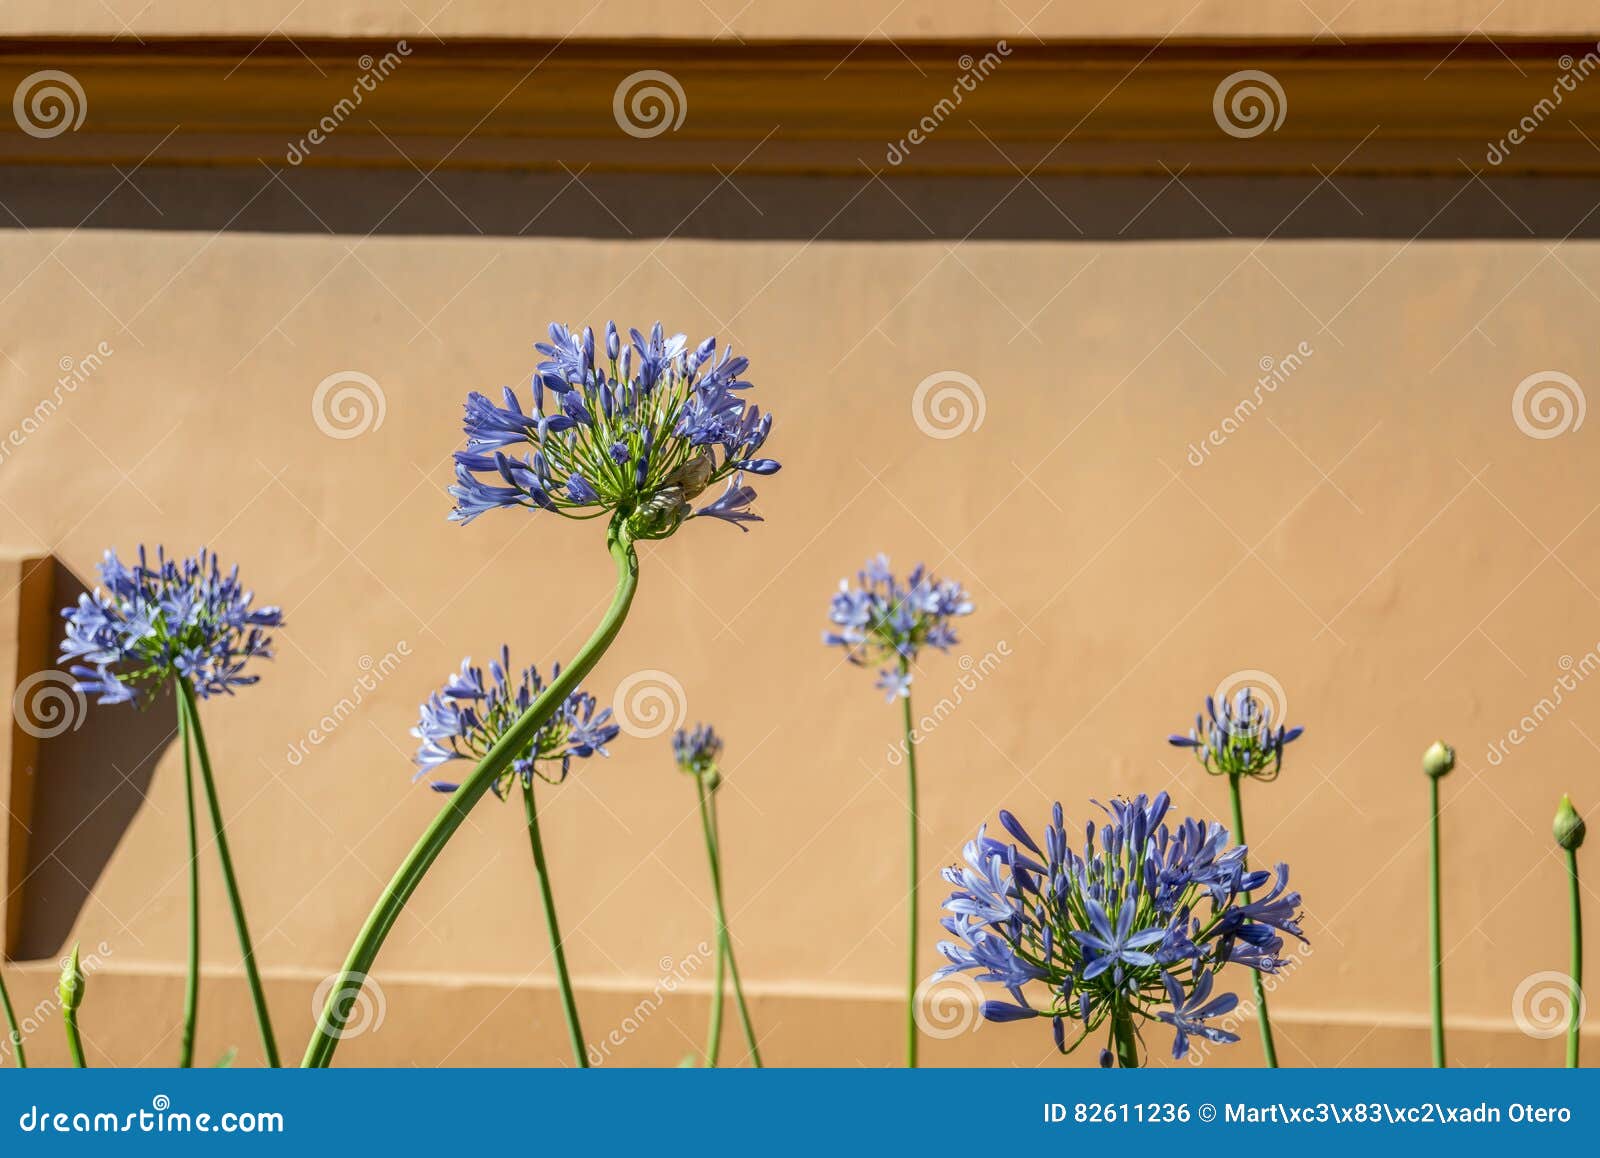 Flores azules del agapanto foto de archivo. Imagen de alegre - 82611236